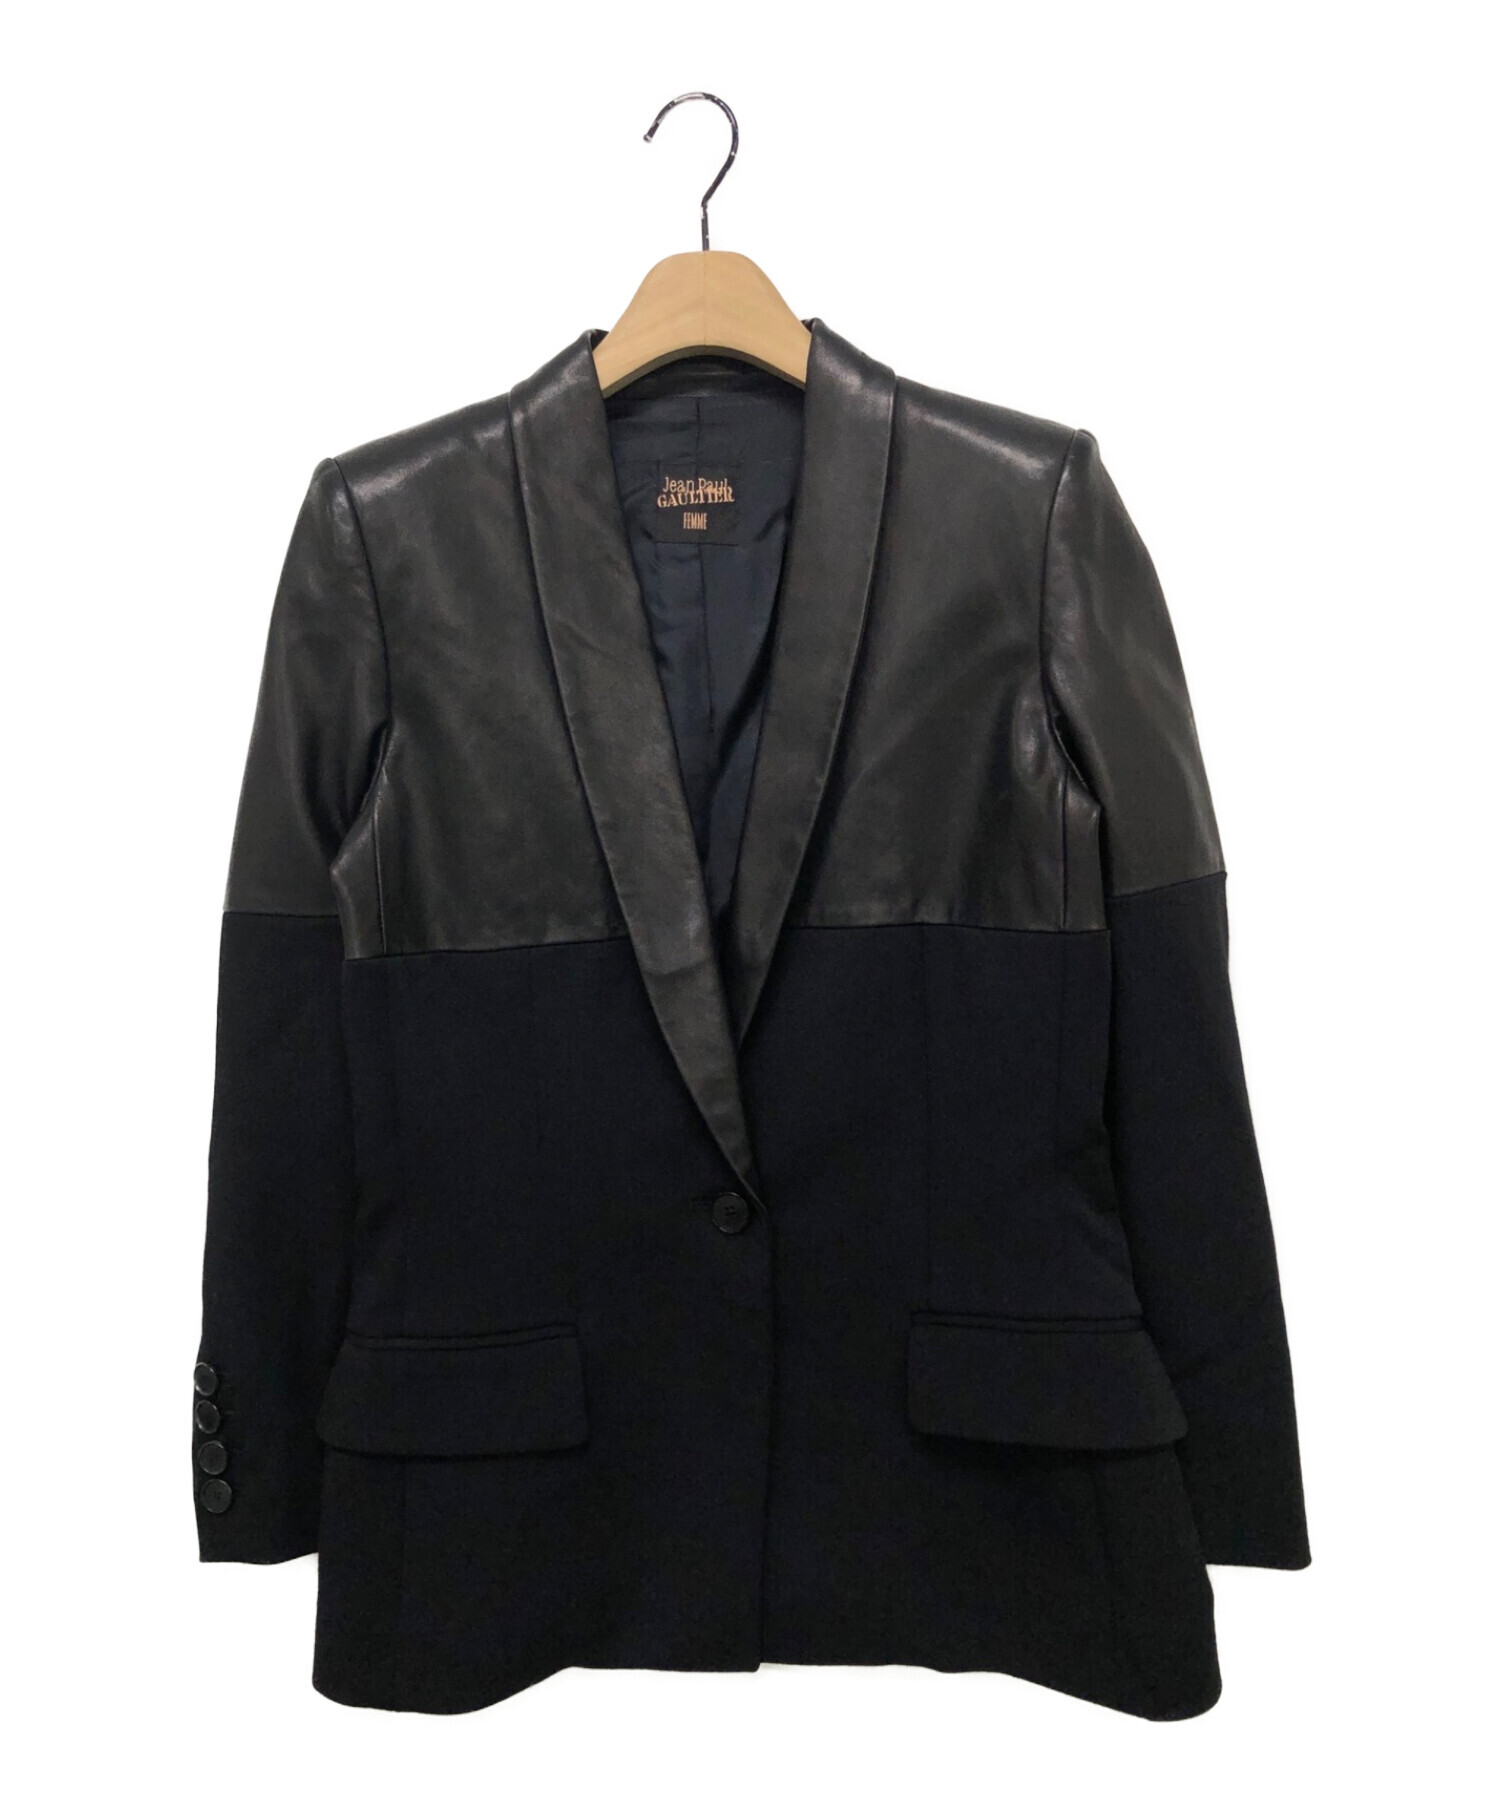 Jean Paul Gaultier FEMME (ジャンポールゴルチェフェム) レザー切替テーラードジャケット ブラック サイズ:40